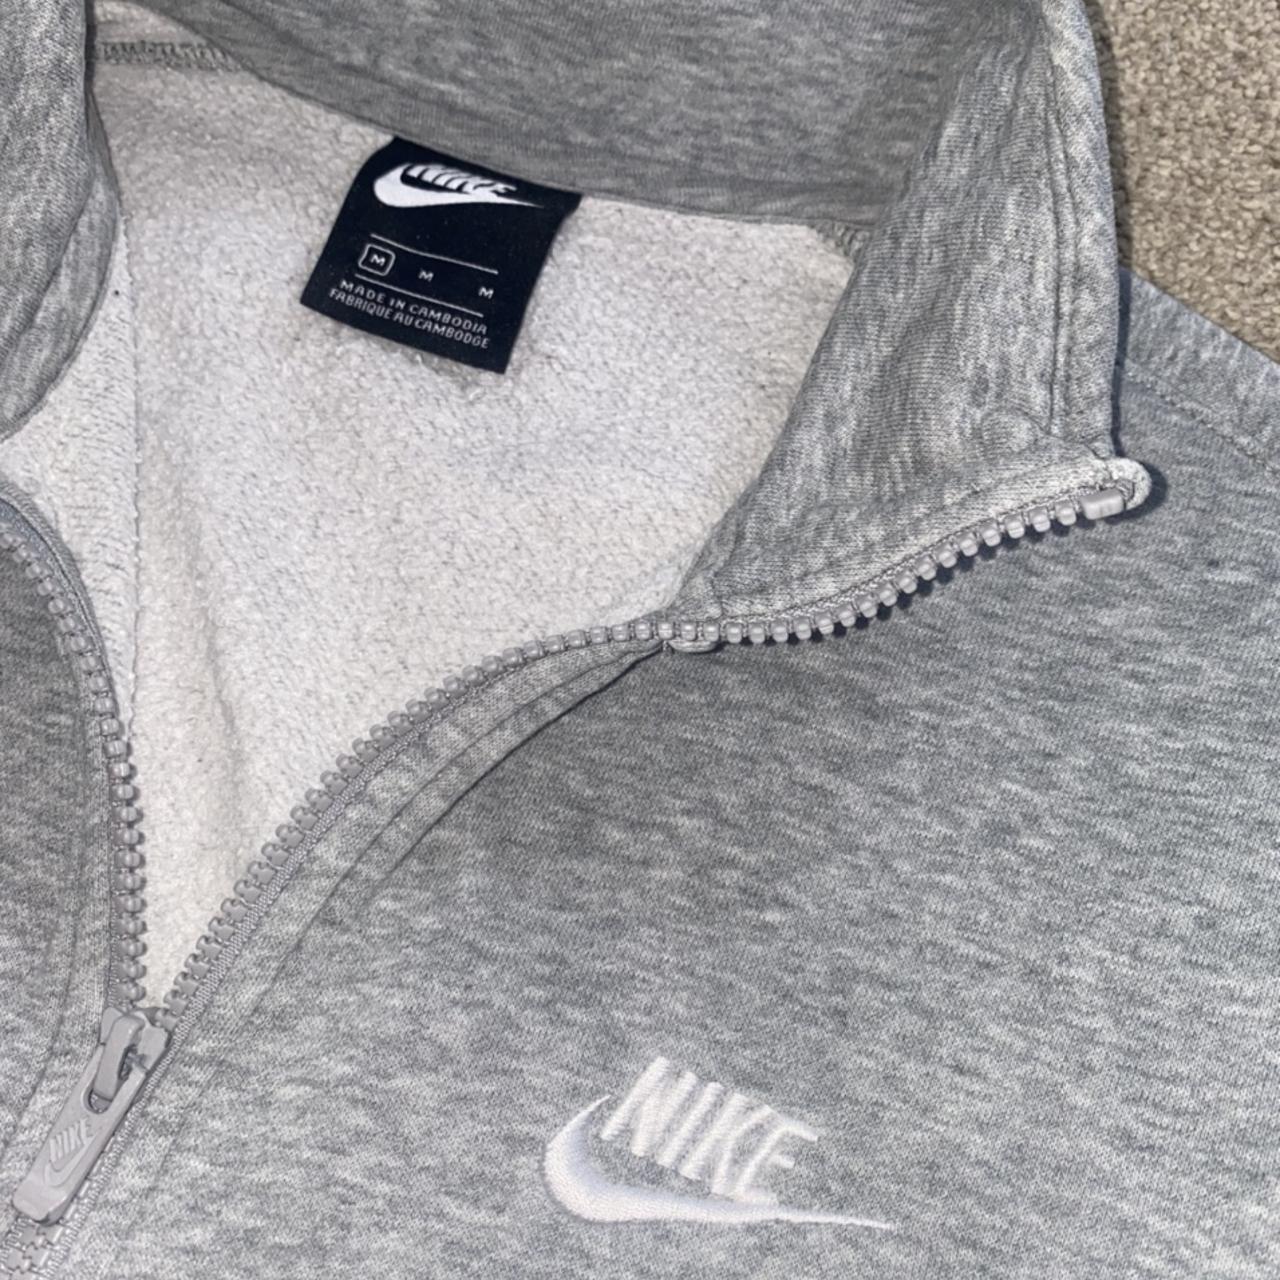 Grey Nike zip jumper / sweatshirt. Good condition... - Depop